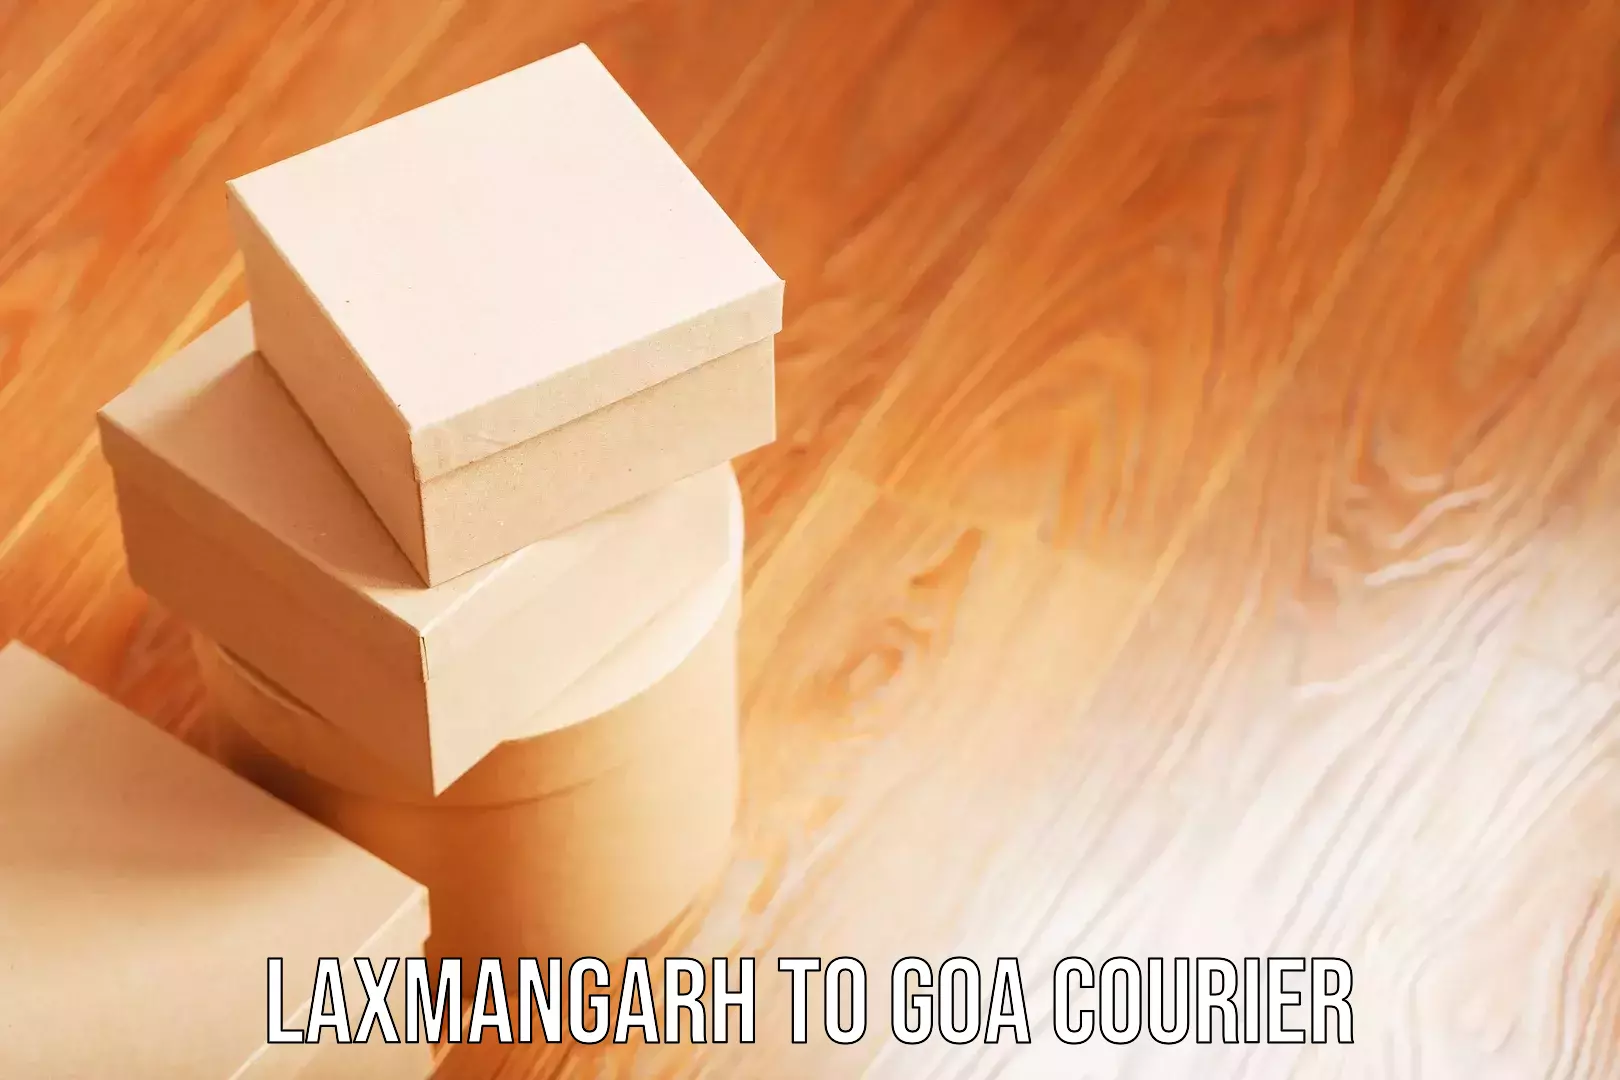 Hassle-free luggage shipping in Laxmangarh to IIT Goa